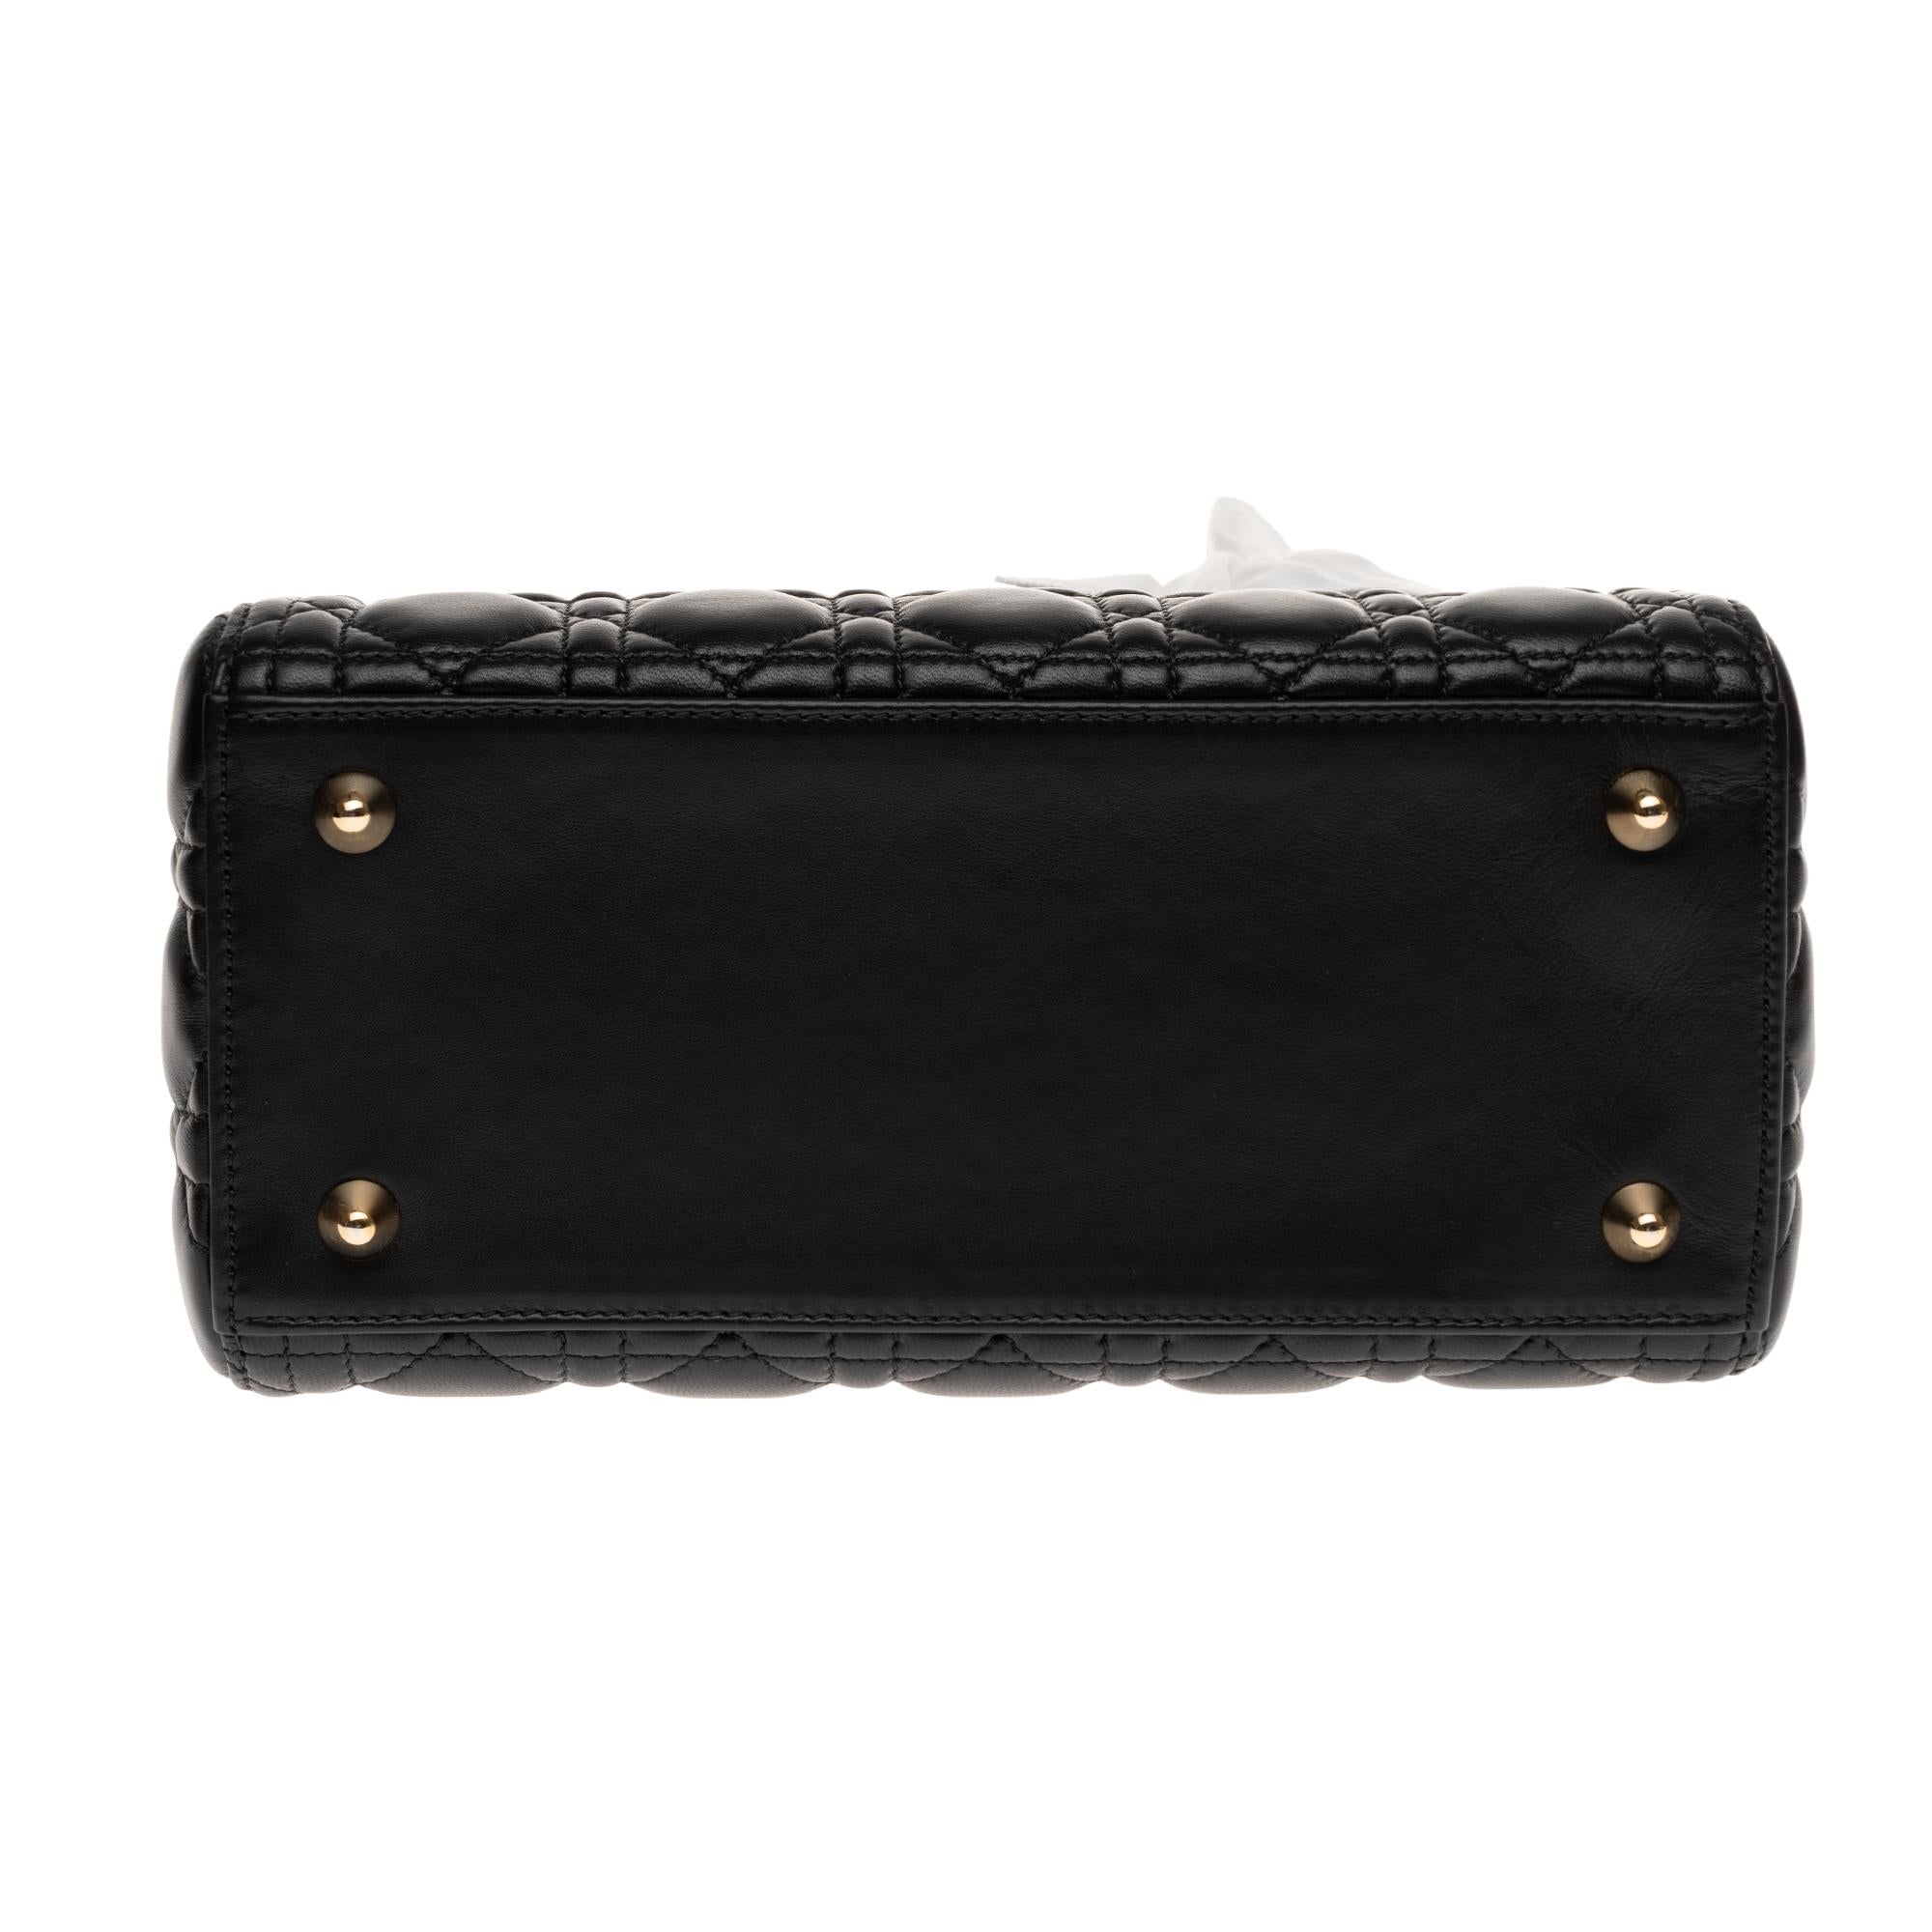  Christian Dior Lady Dior MM (Medium size) handbag in black cannage leather, GHW 1